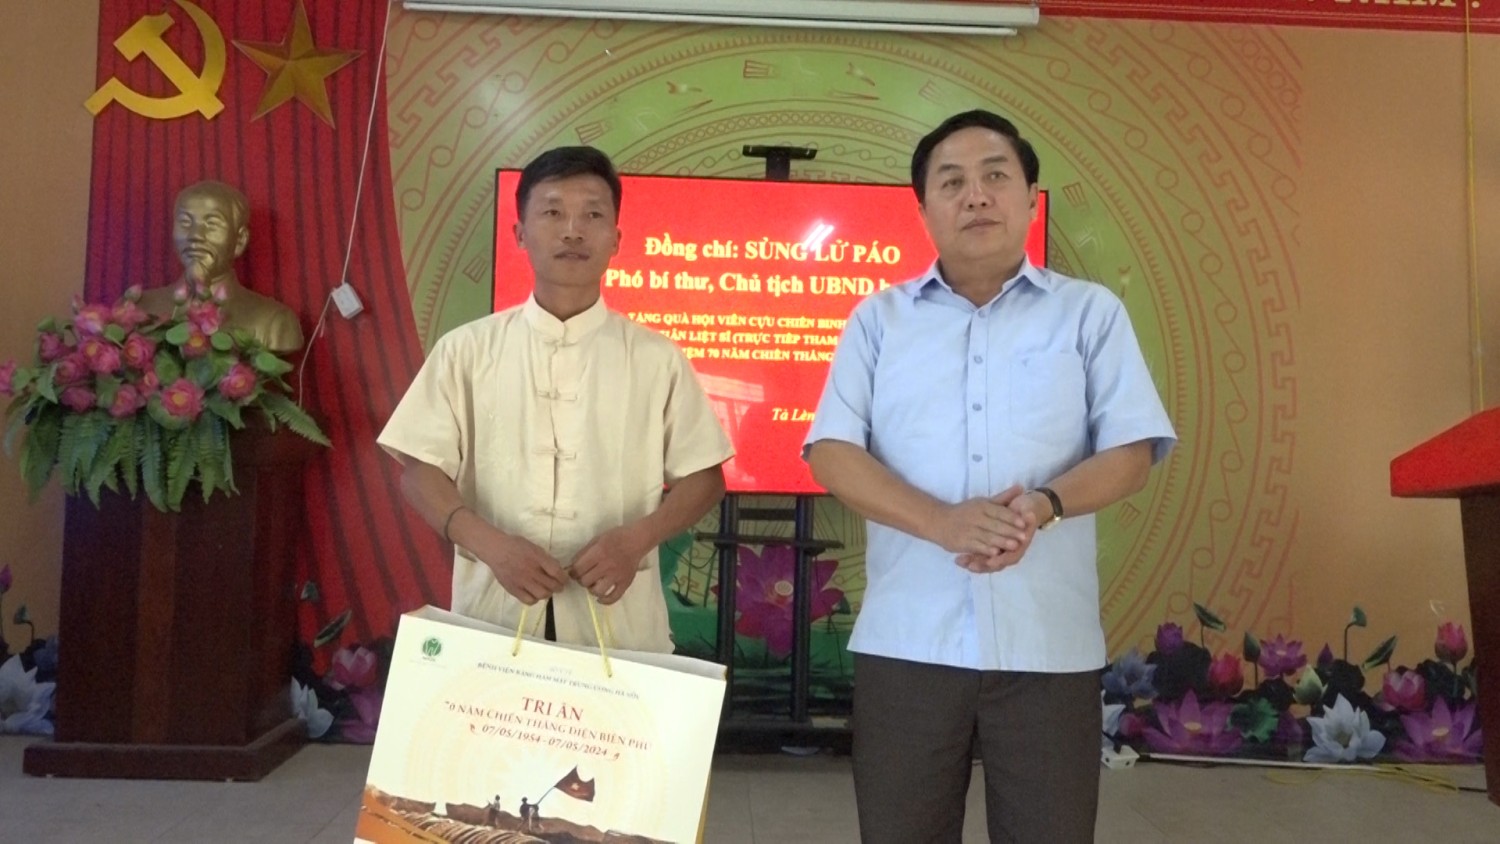 Đồng chí Sùng Lử Páo - Chủ tịch UBND huyện Tam Đường thăm, tặng quà hội viên CCB thời kỳ chống Pháp và các gia đình thân nhân liệt sĩ